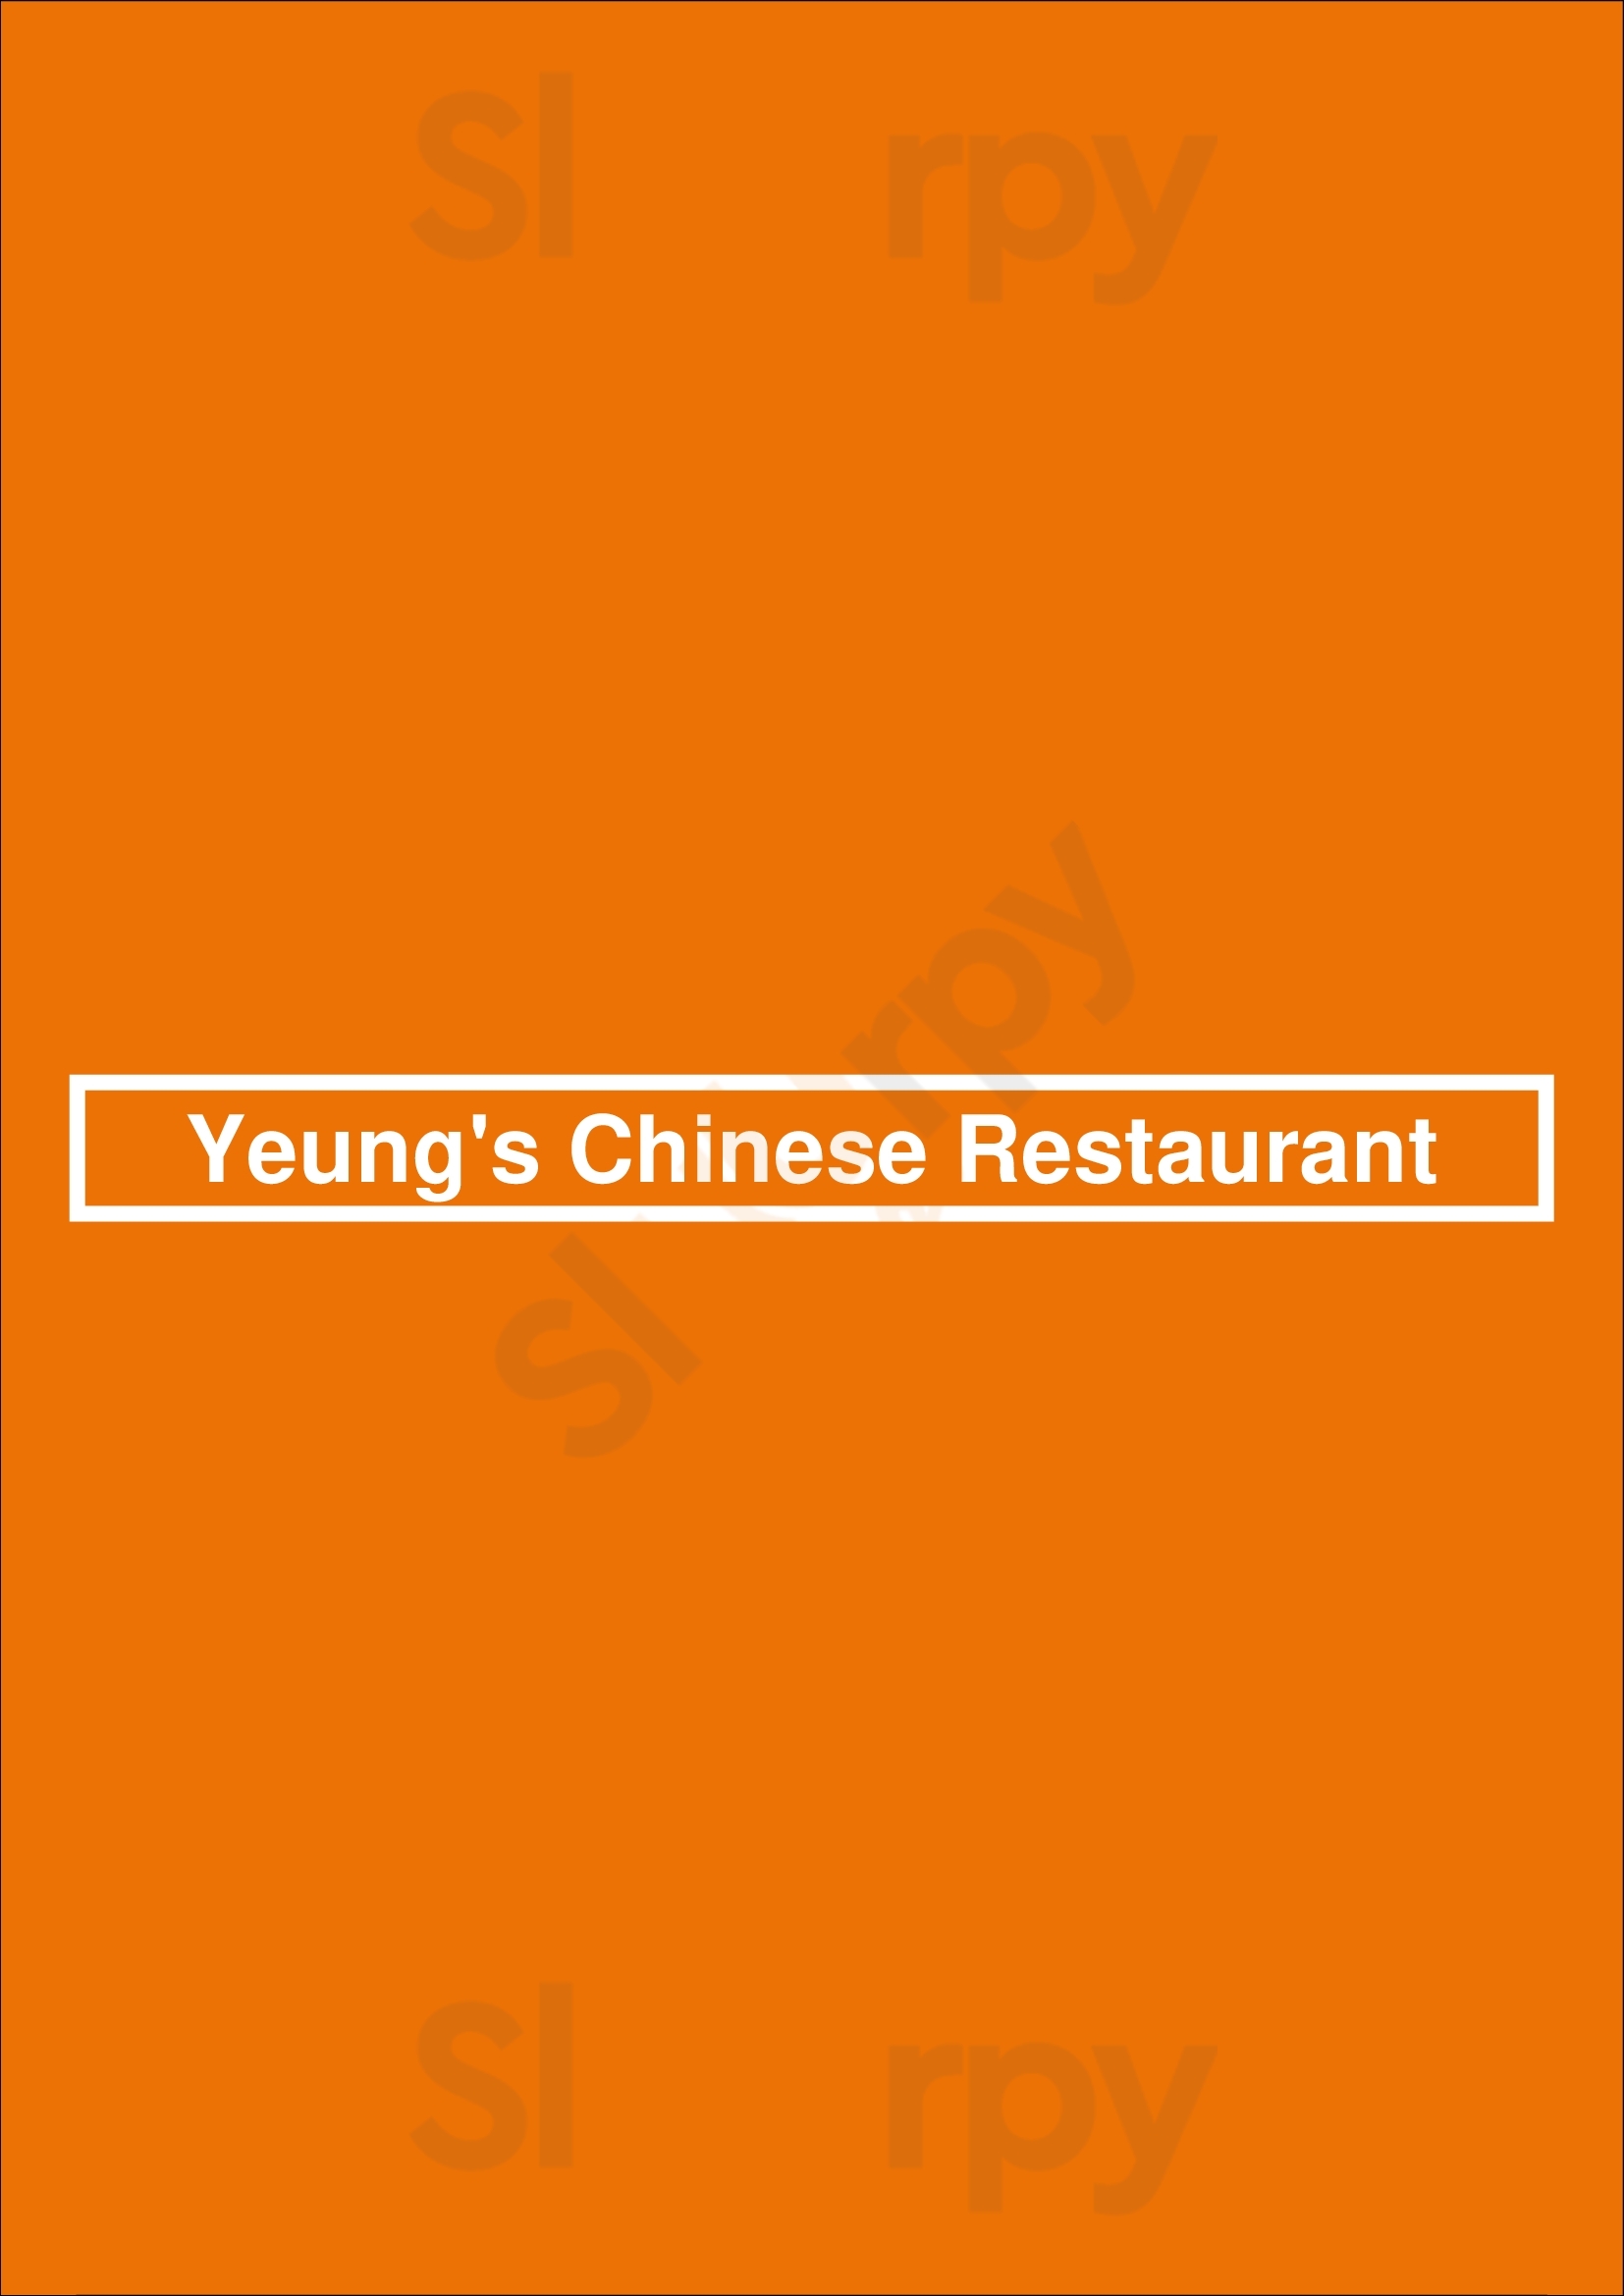 Yeung's Chinese Restaurant Miami Beach Menu - 1